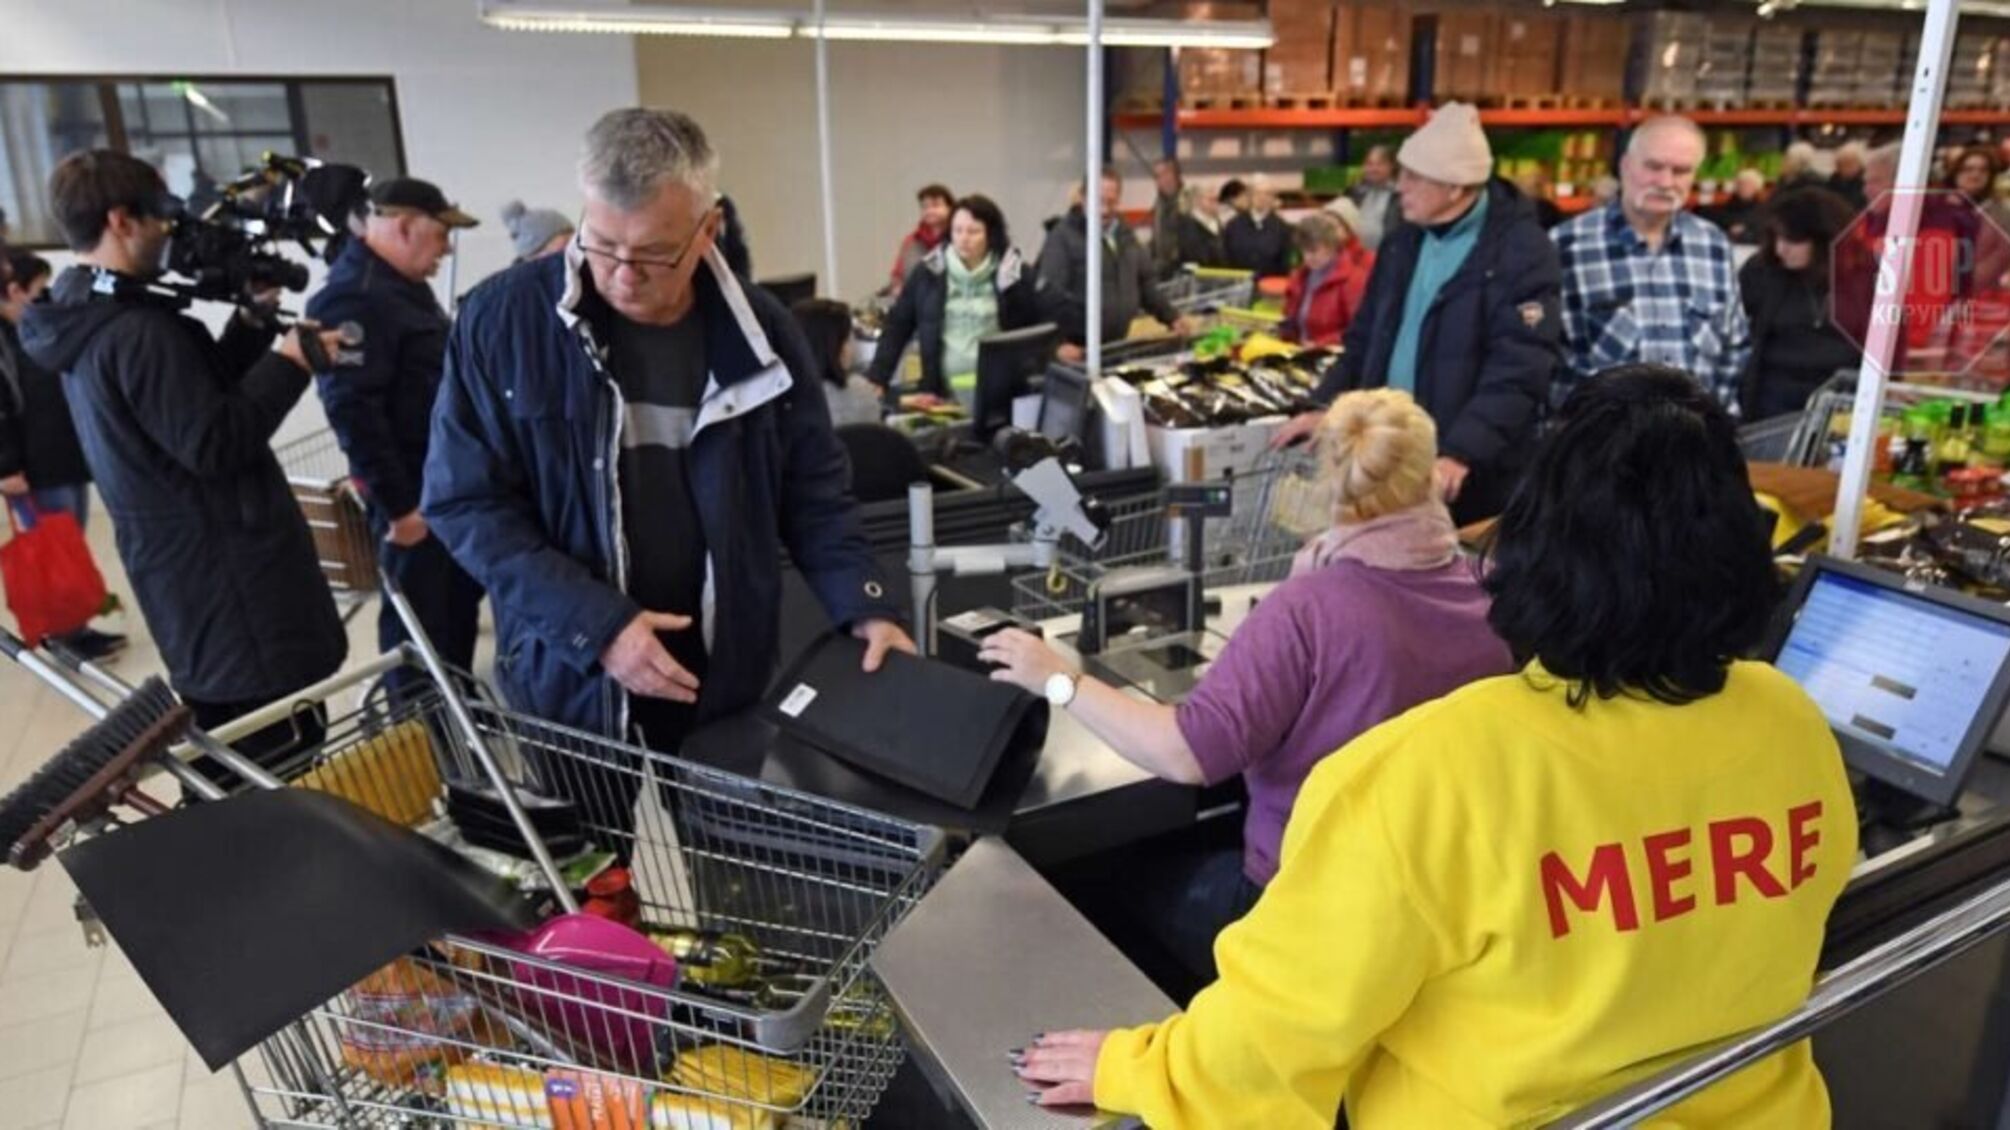 Данілов: Російські супермаркети MERE більше не працюватимуть в Україні